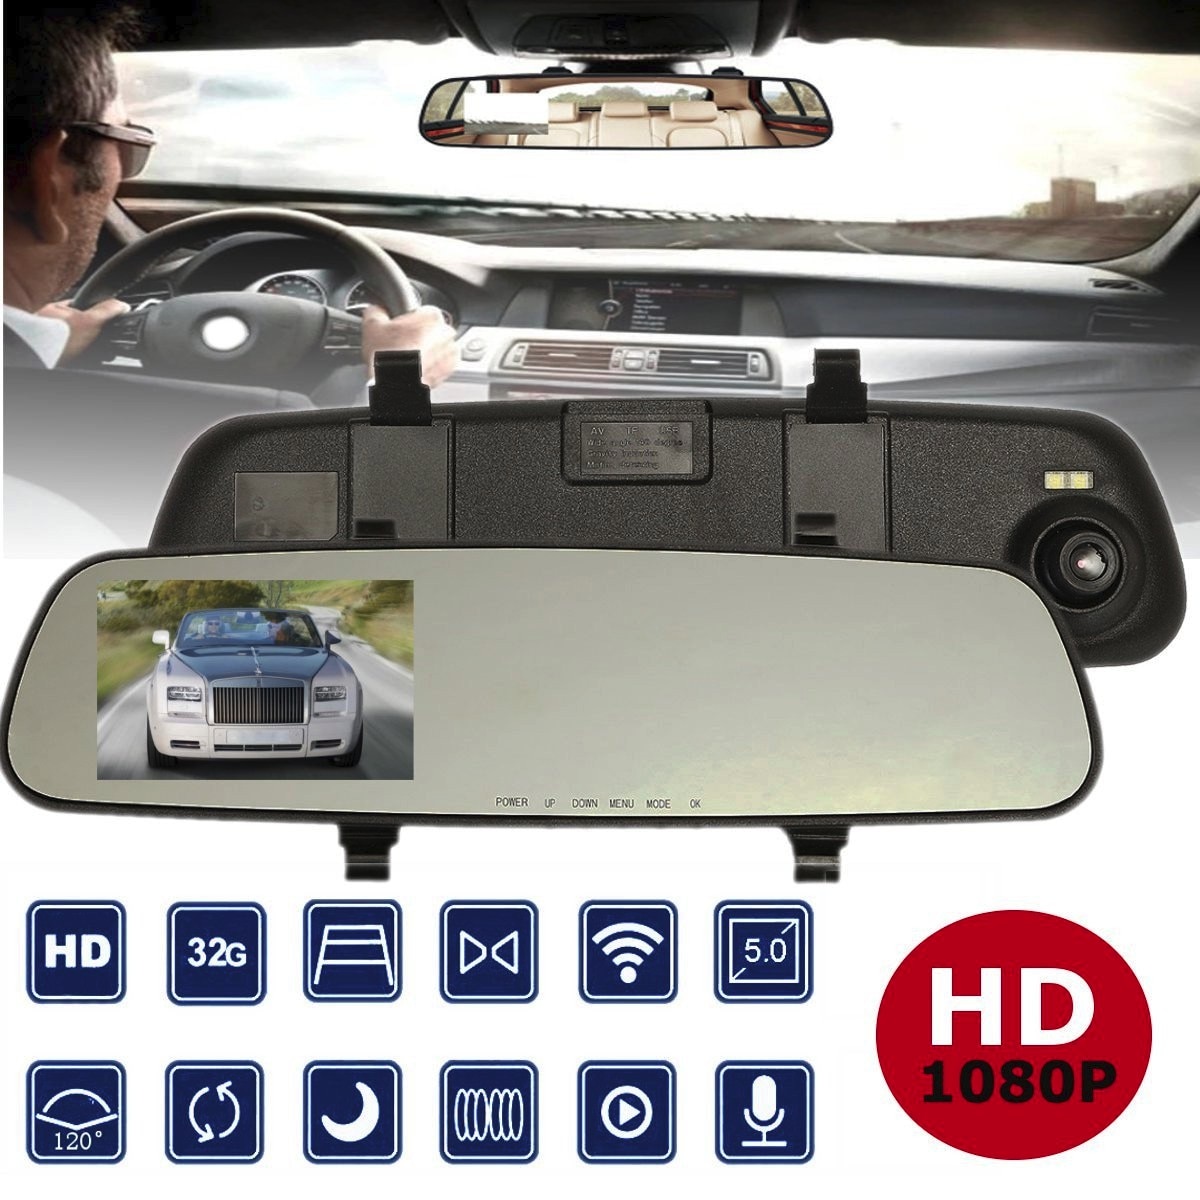 2.4 Inch 1080P Full Hd Auto Rijden Video Recorder Achteruitkijkspiegel Dvr Car Nachtzicht Achteruitrijcamera dash Cam Camera 'S